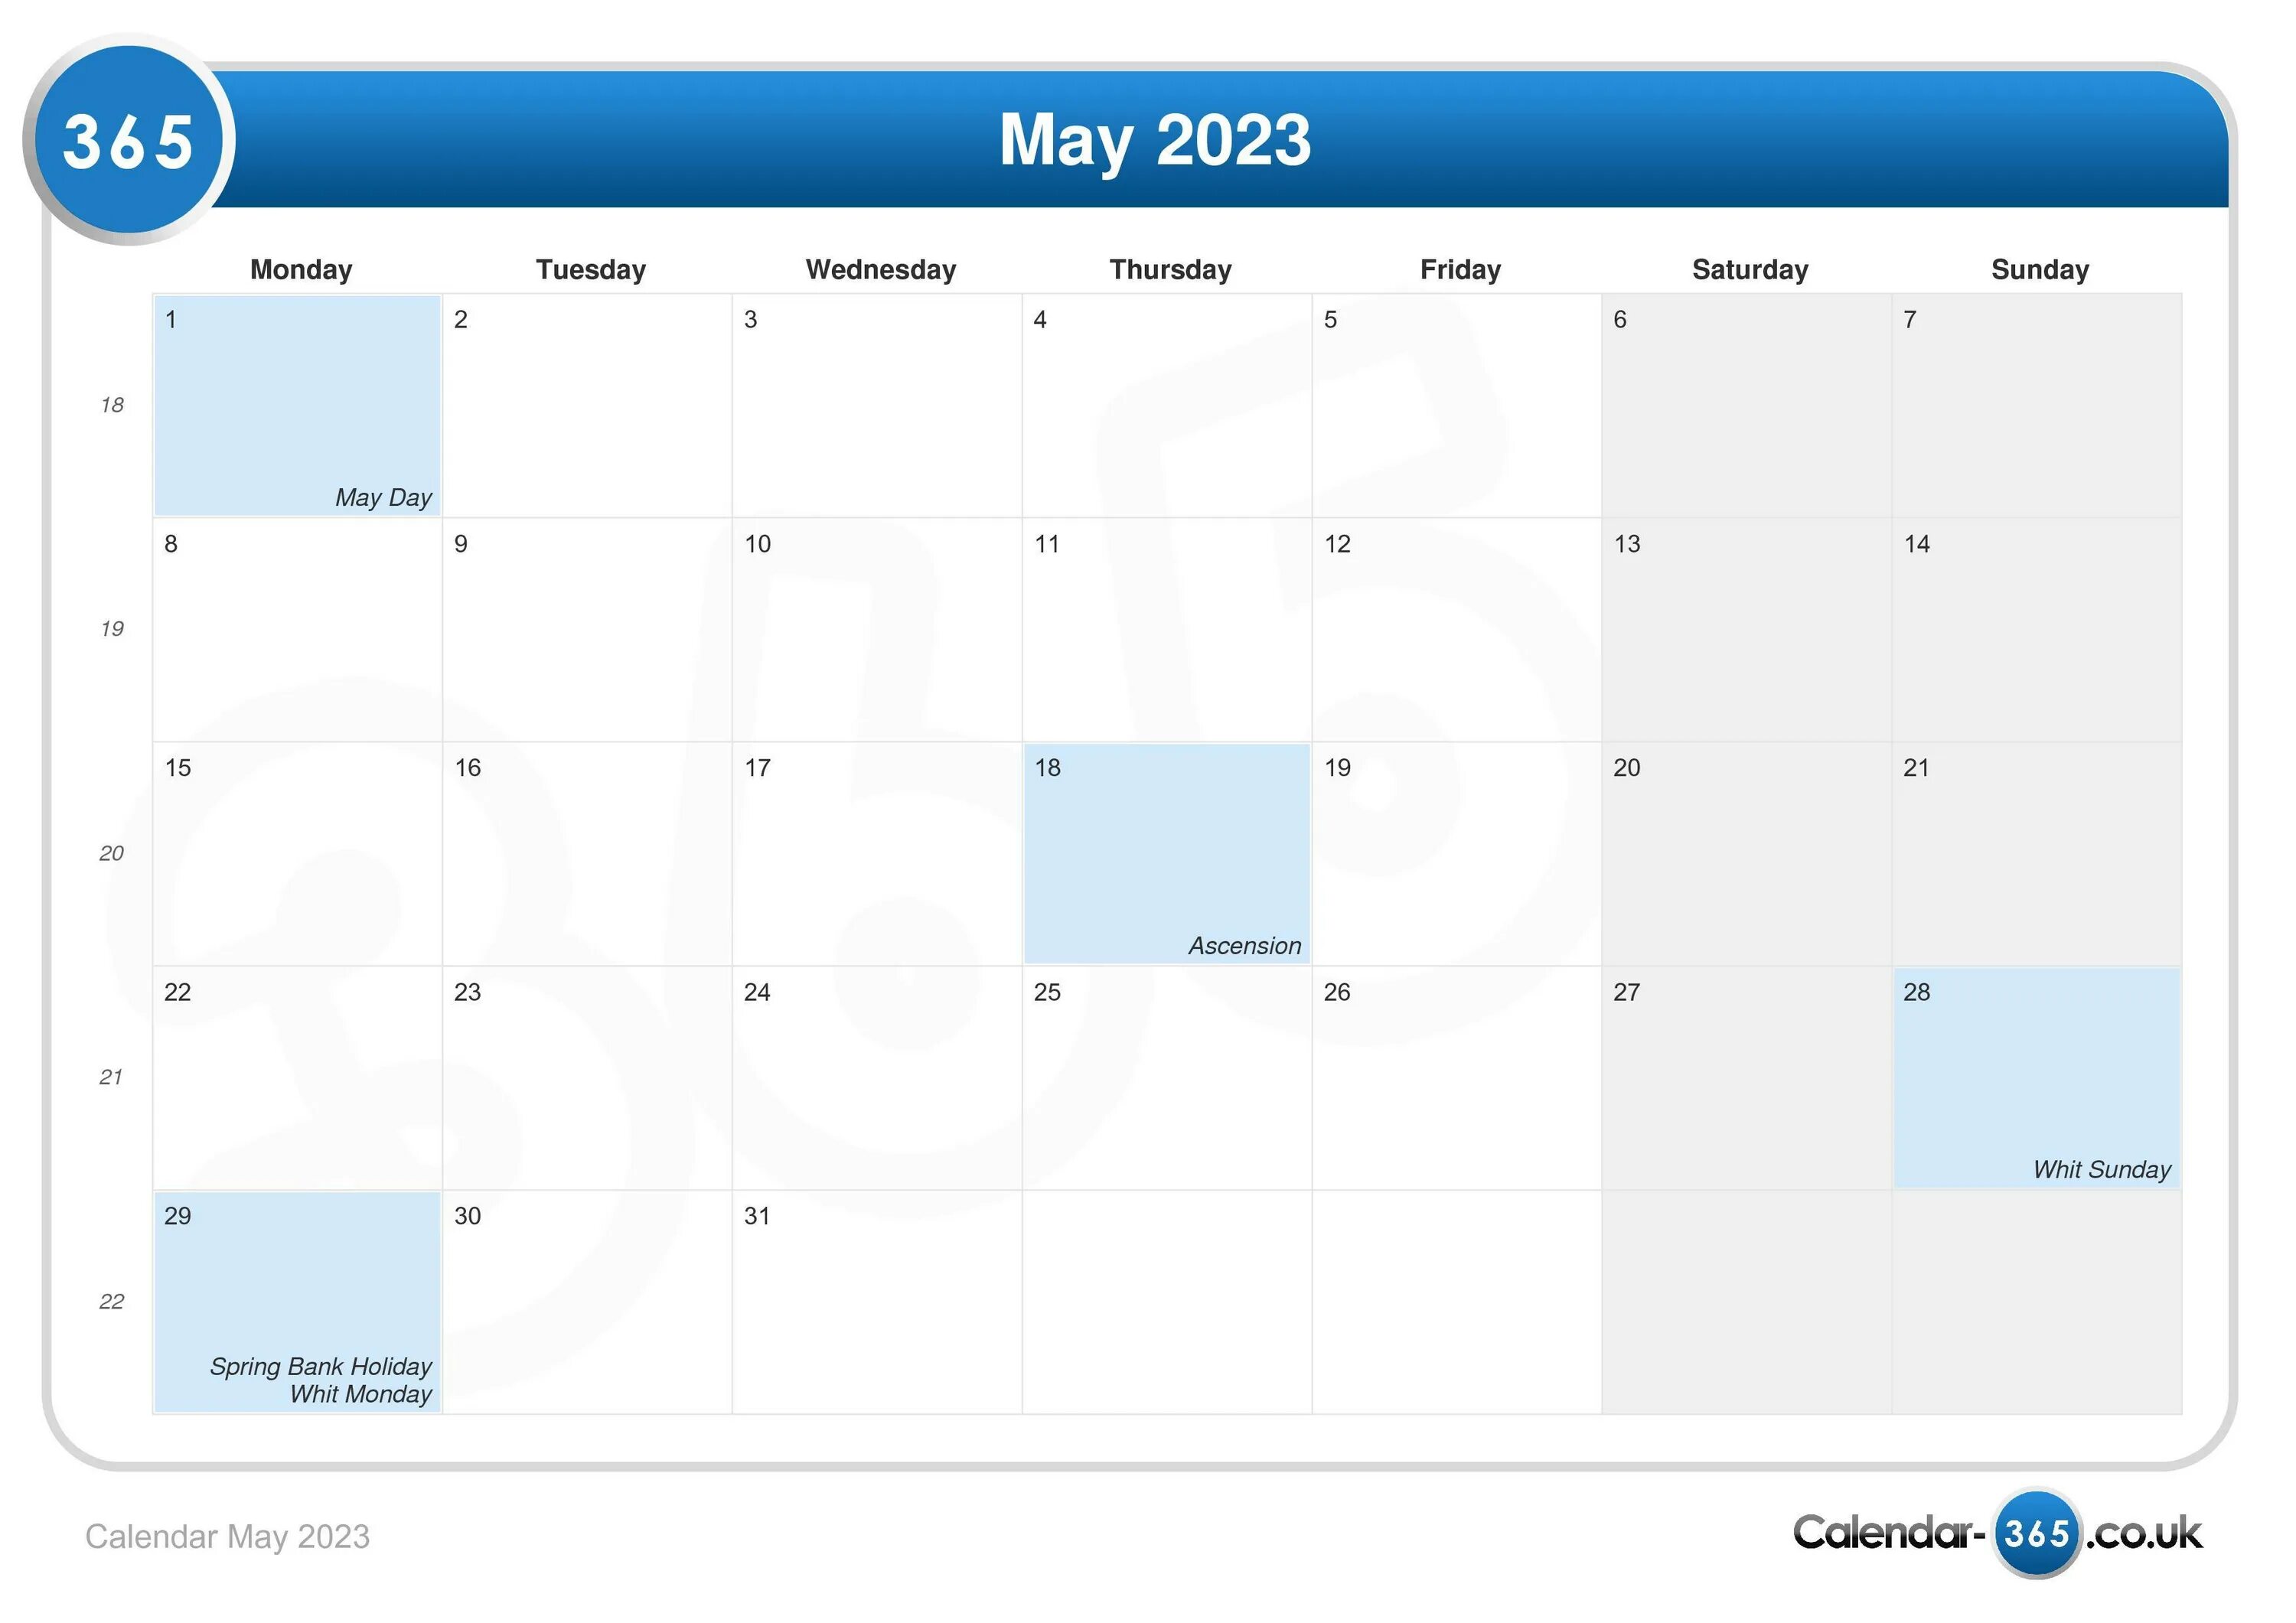 Про май 2023. Календарь май 2023. Календарь мая 2023 года. Календарь на 2023 май 2023. Планер май 2023.